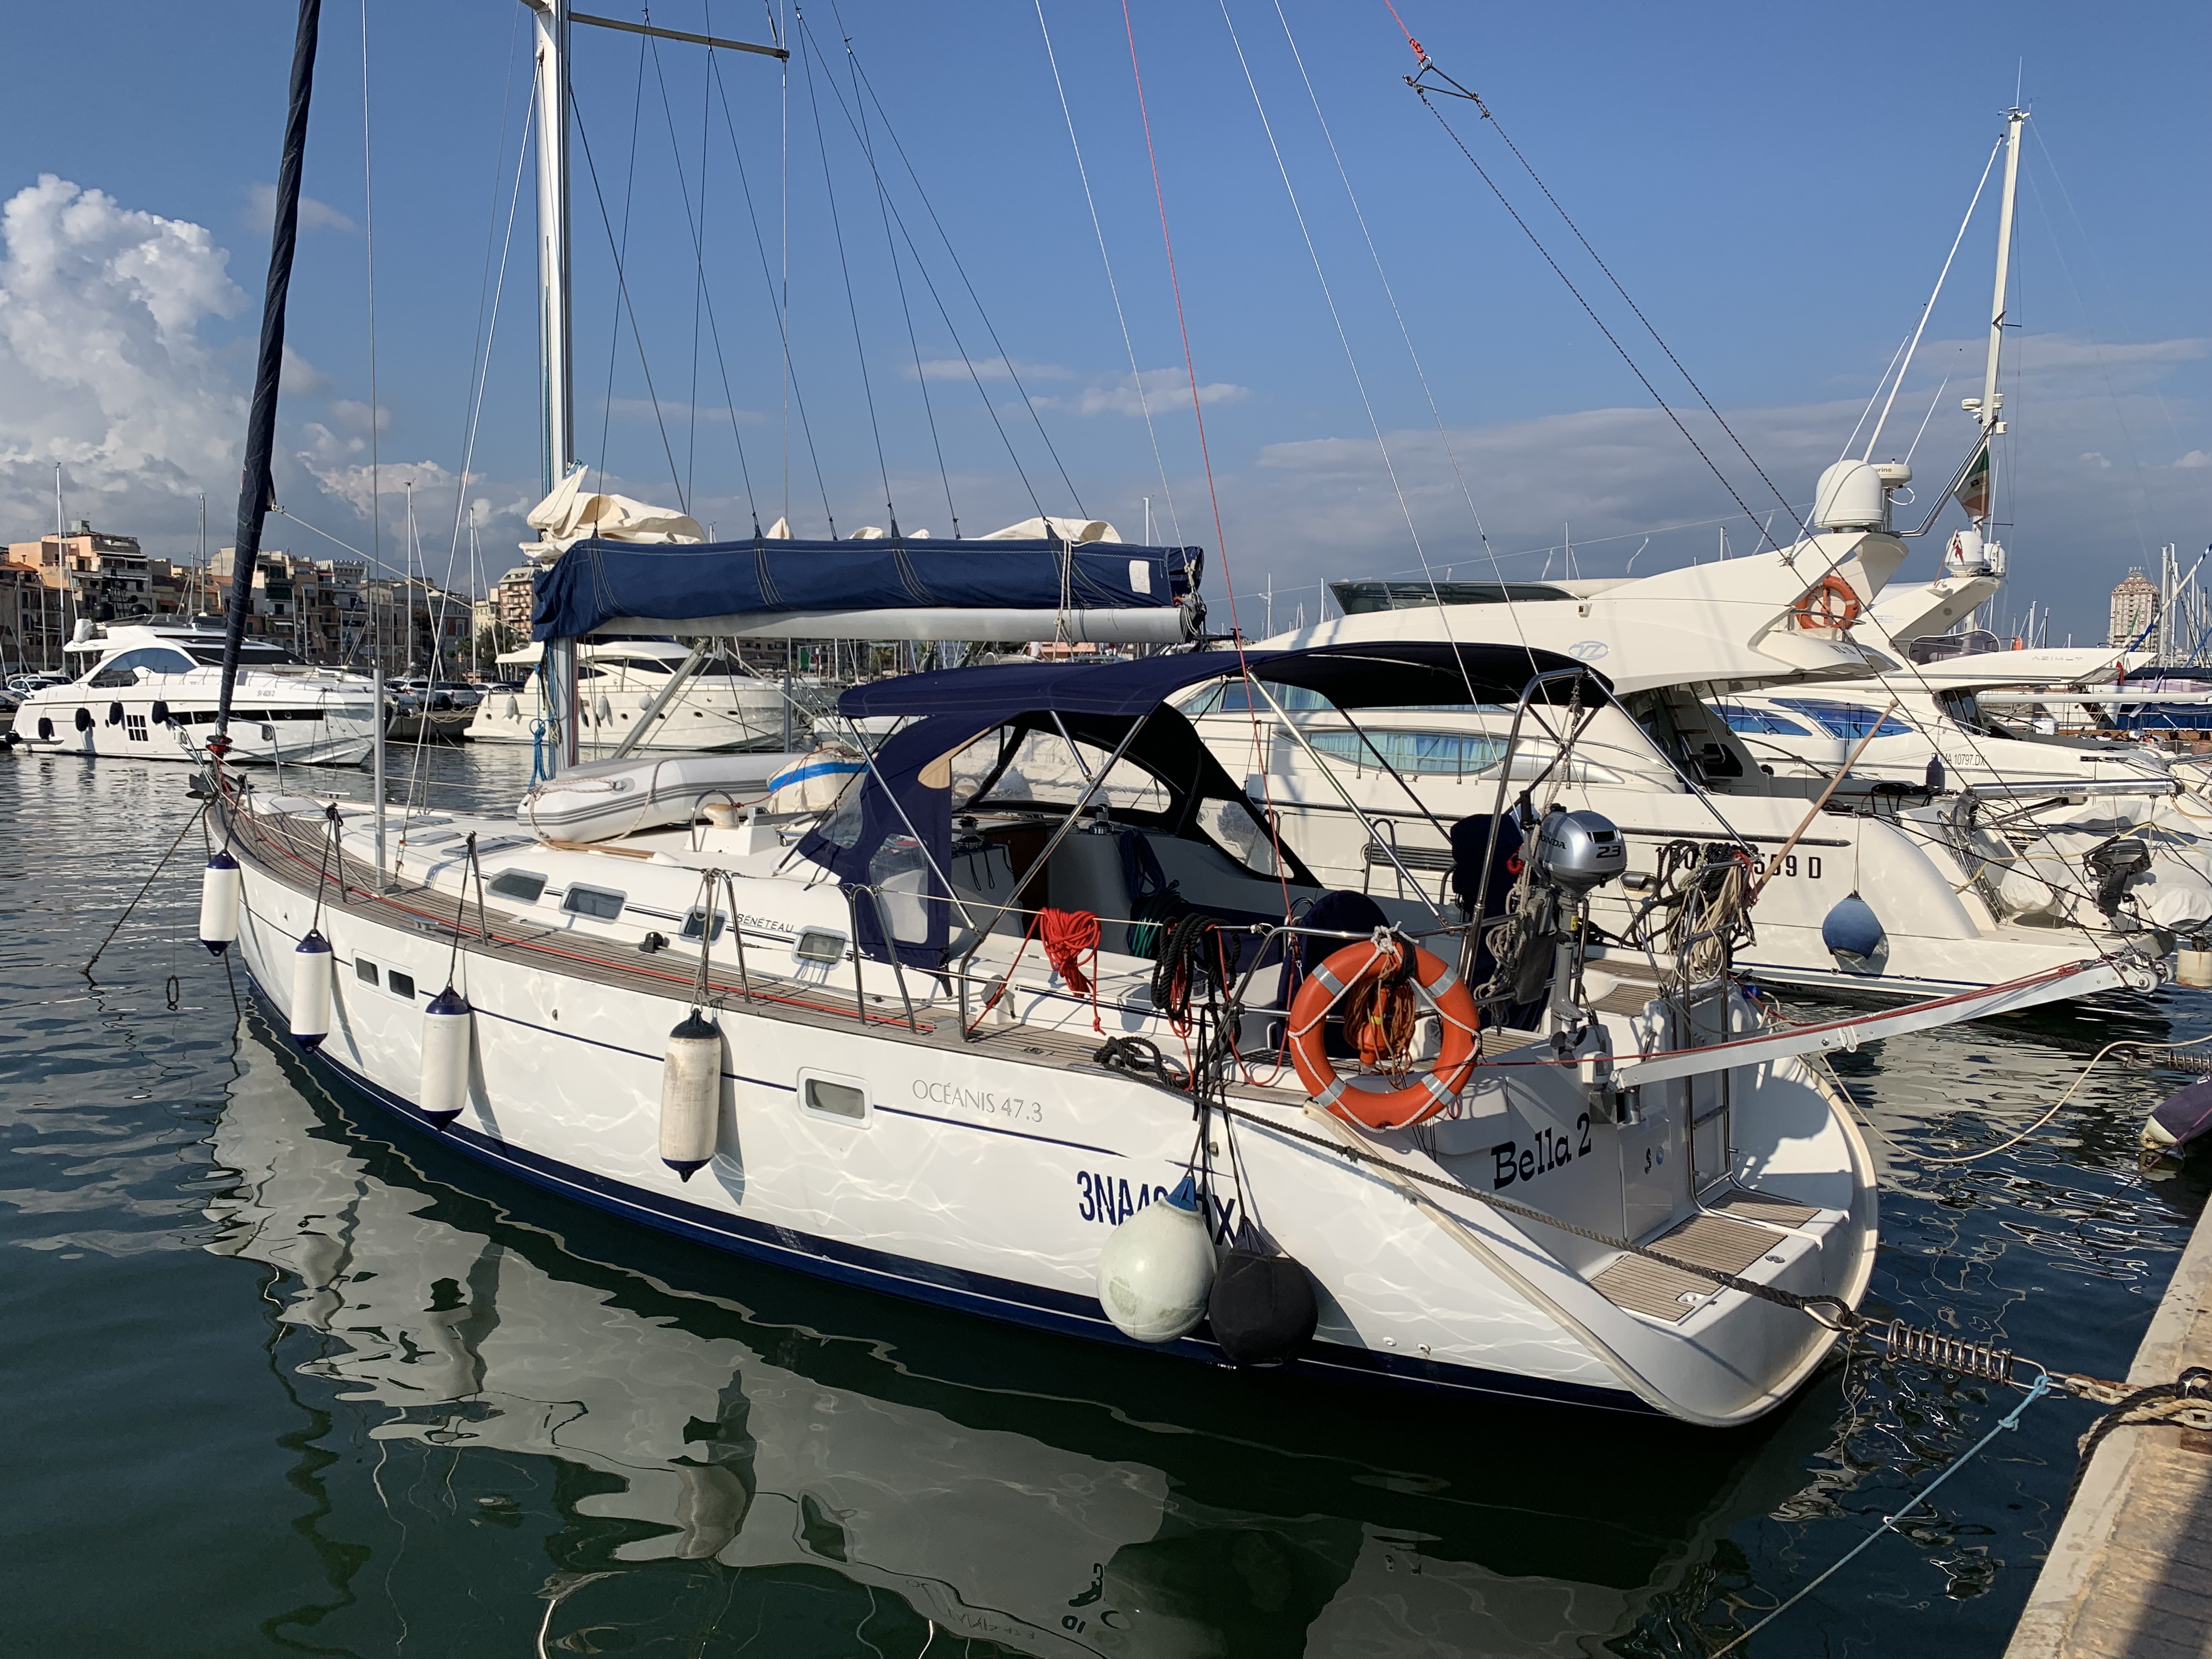 Beneteau 473 - Yacht Charter Nettuno & Boat hire in Italy Rome Anzio Marina di Nettuno 1